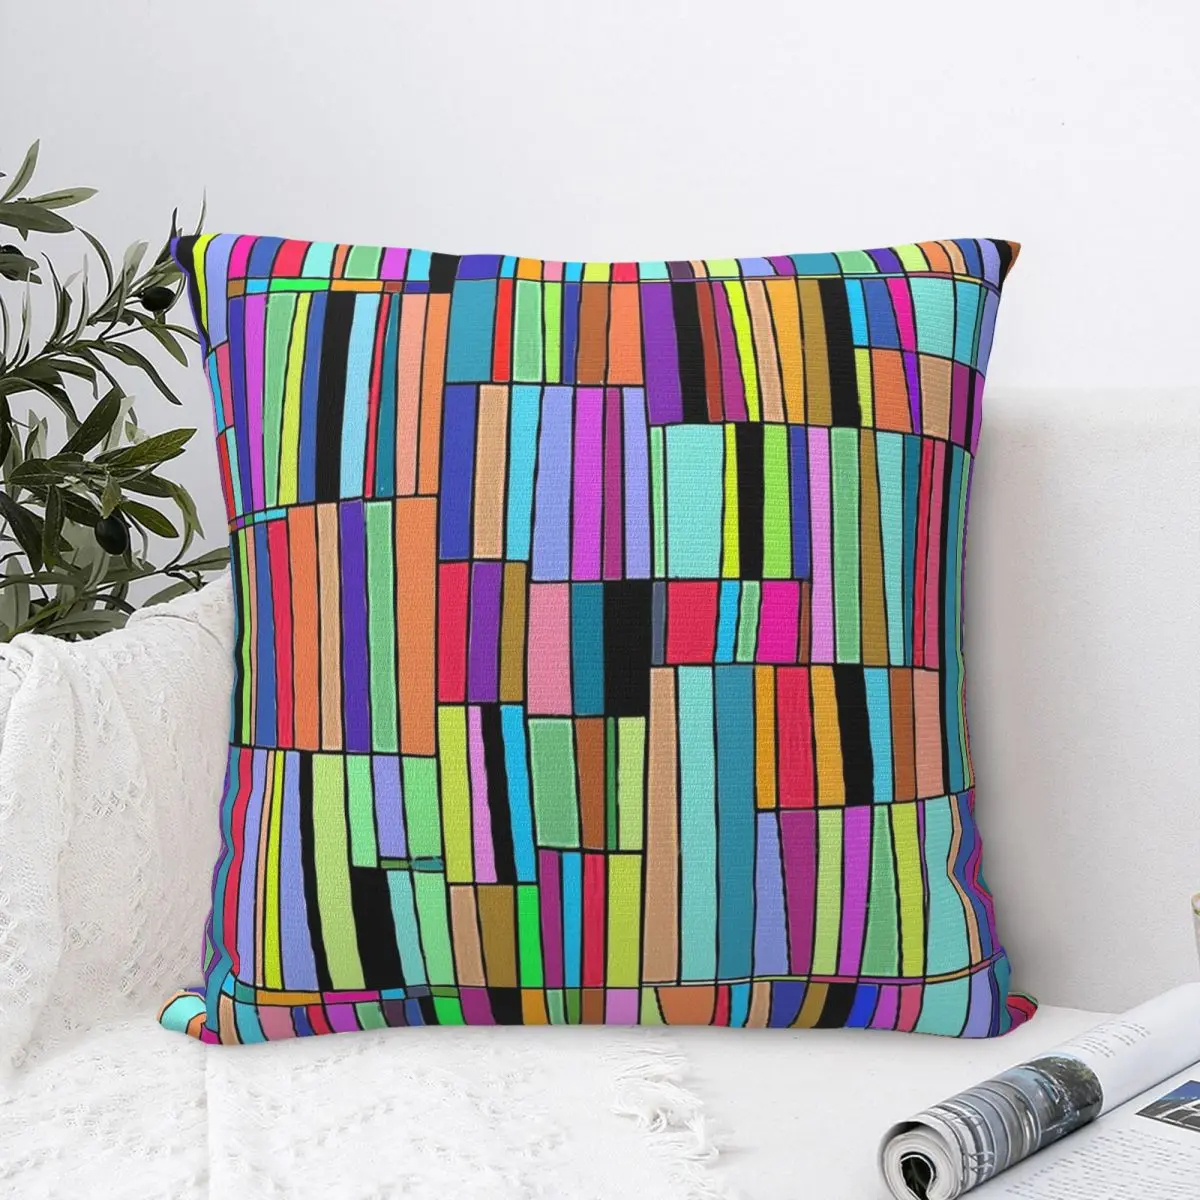 

Разноцветная наволочка для подушки, абстрактная книжная полка, квадратная подушка, декоративная подушка для офиса, автомобиля, дома